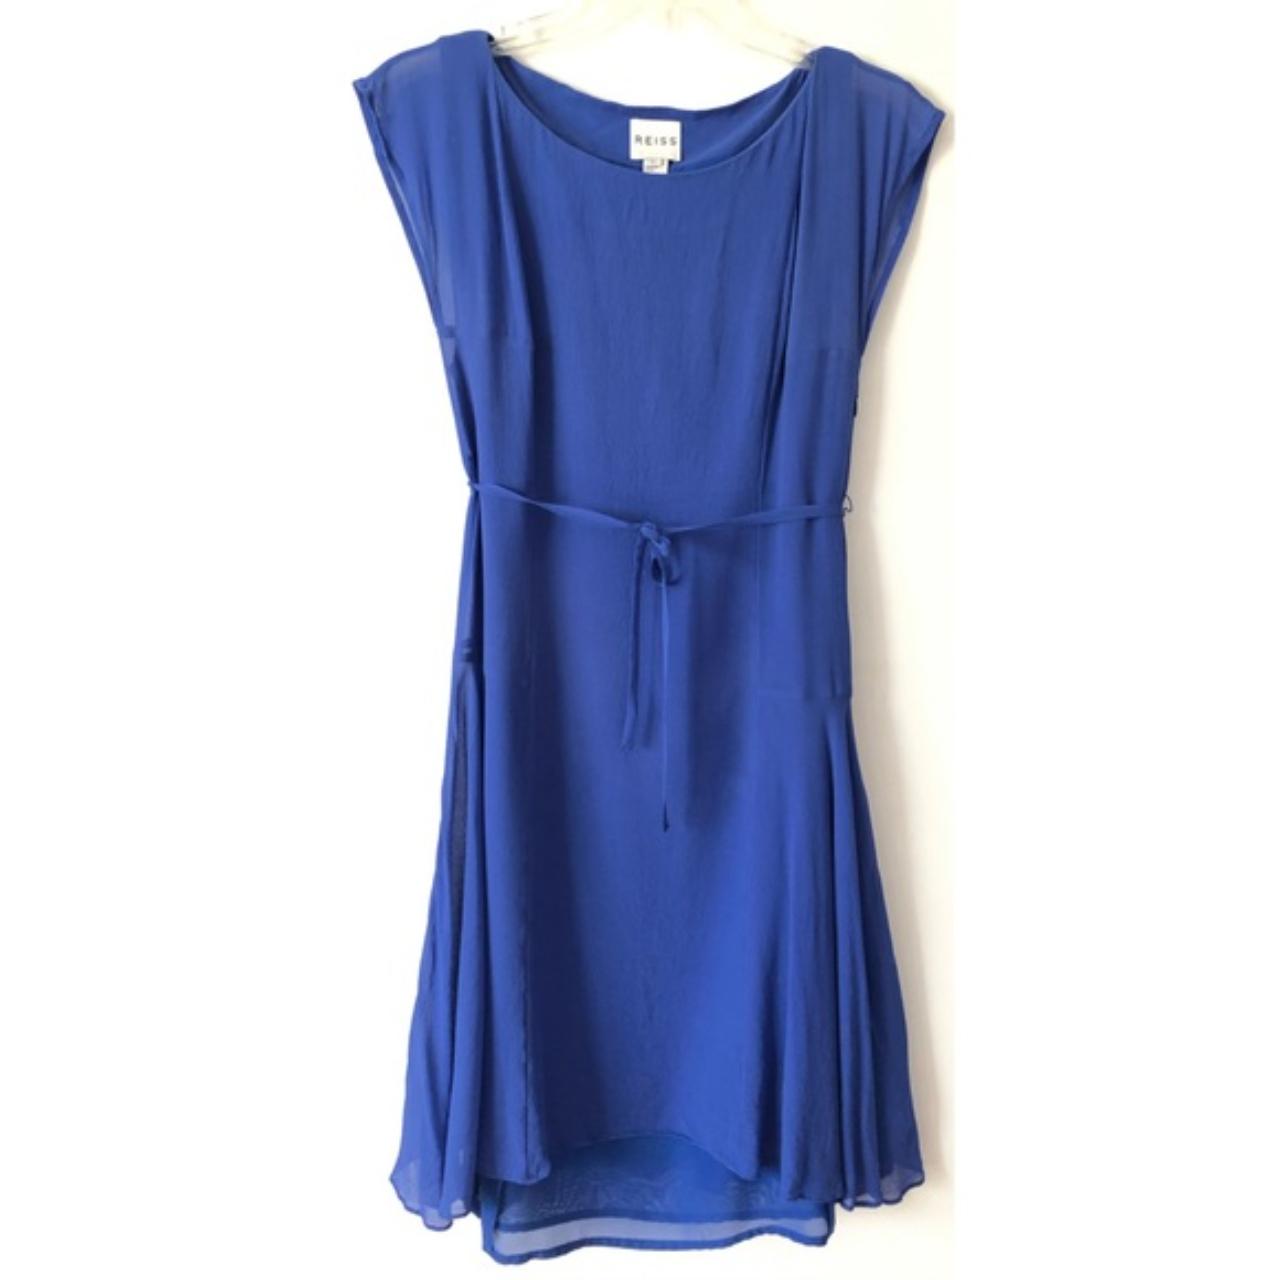 Reiss Thena Blue Silk Fit & Flare Dress 2. Flowy... - Depop